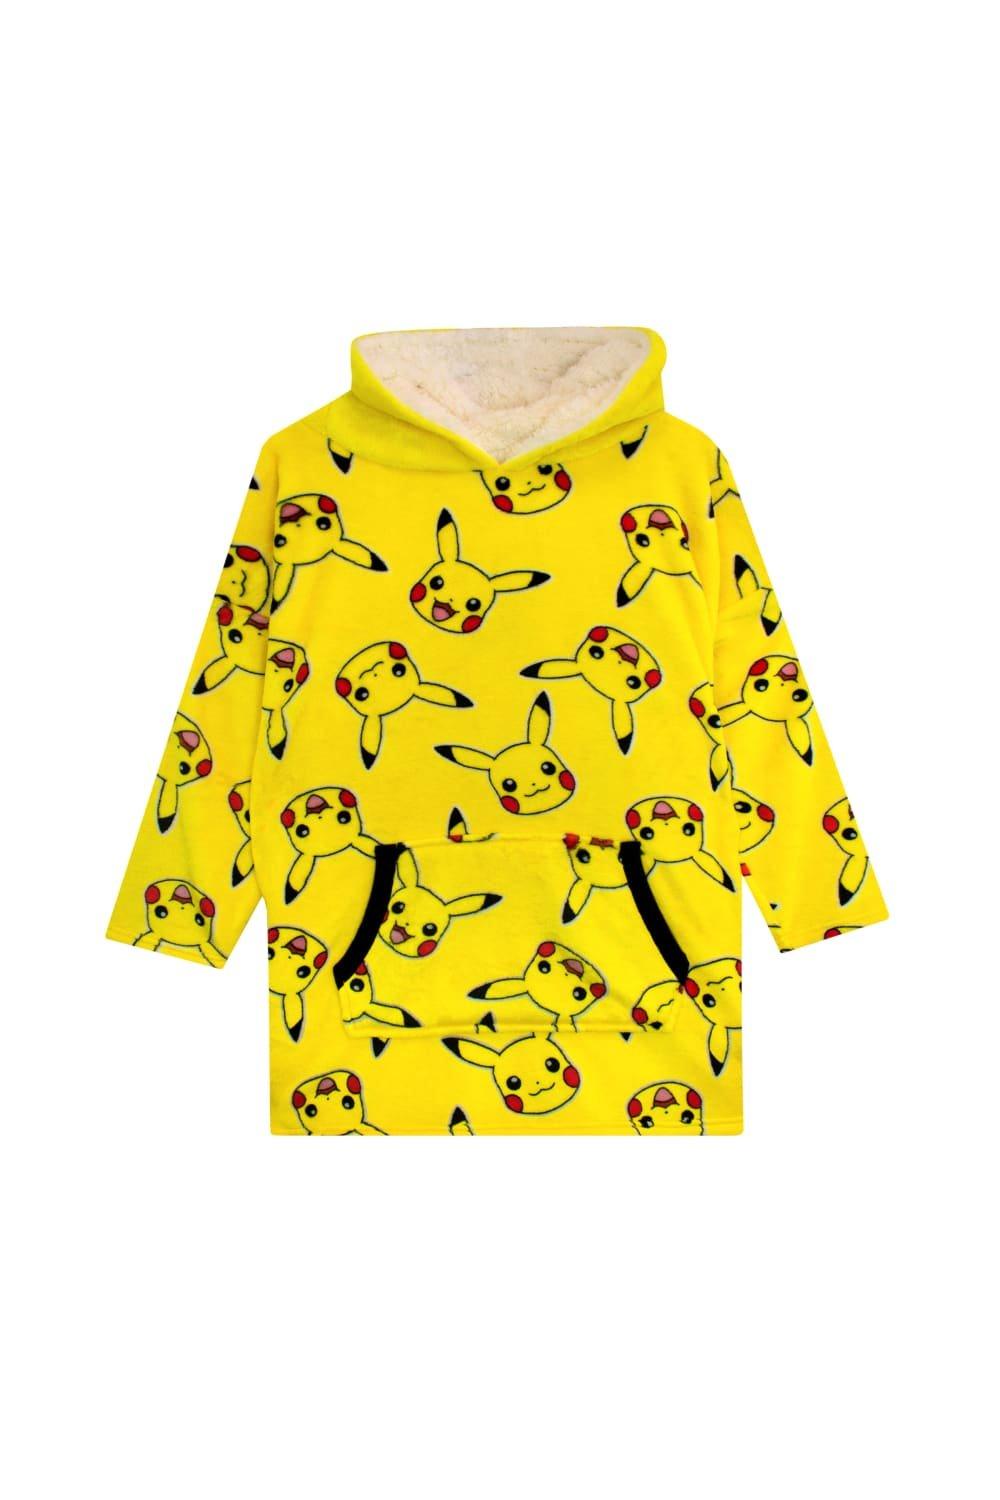 Pokemon Pikachu Oversized Fleece Blanket Hoodie Loungewear|yellow